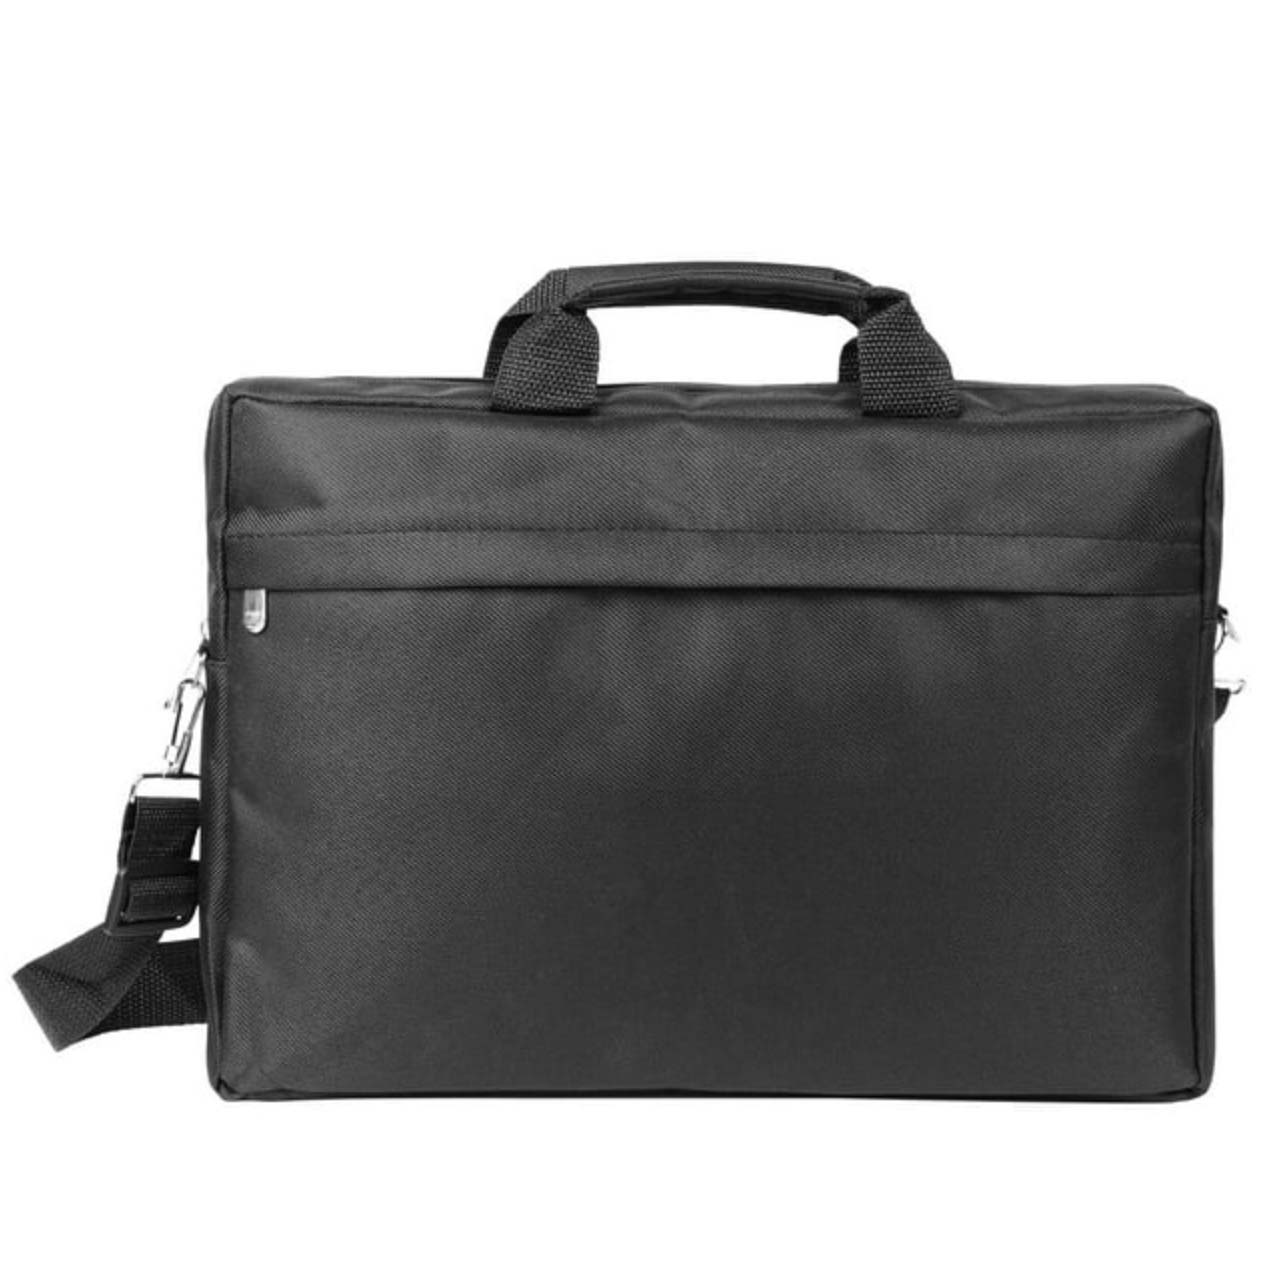 Minimalist black shoulder laptop bag